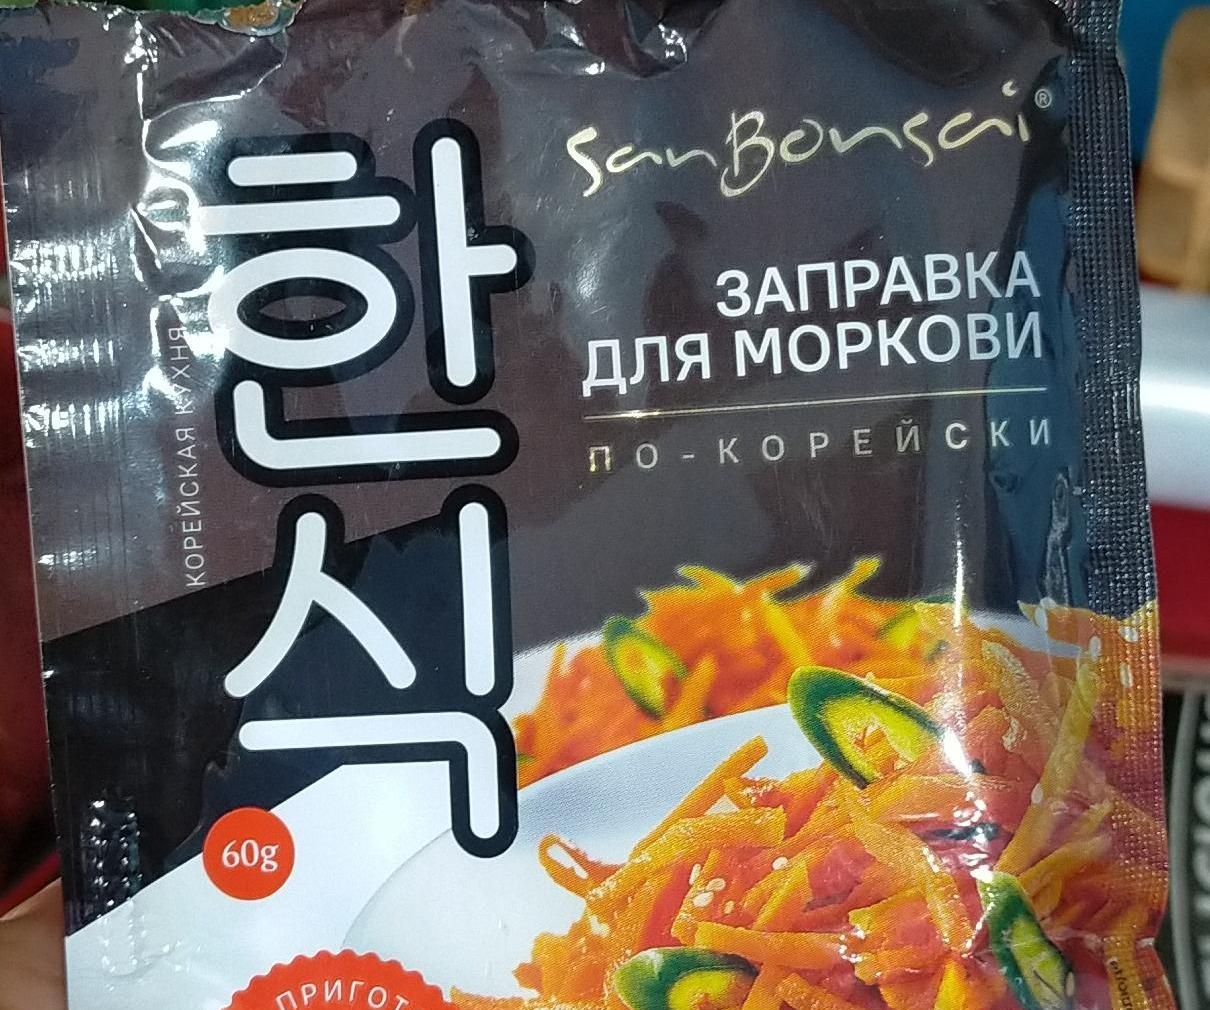 Фото - Заправка для моркови по-корейски SanBonsai